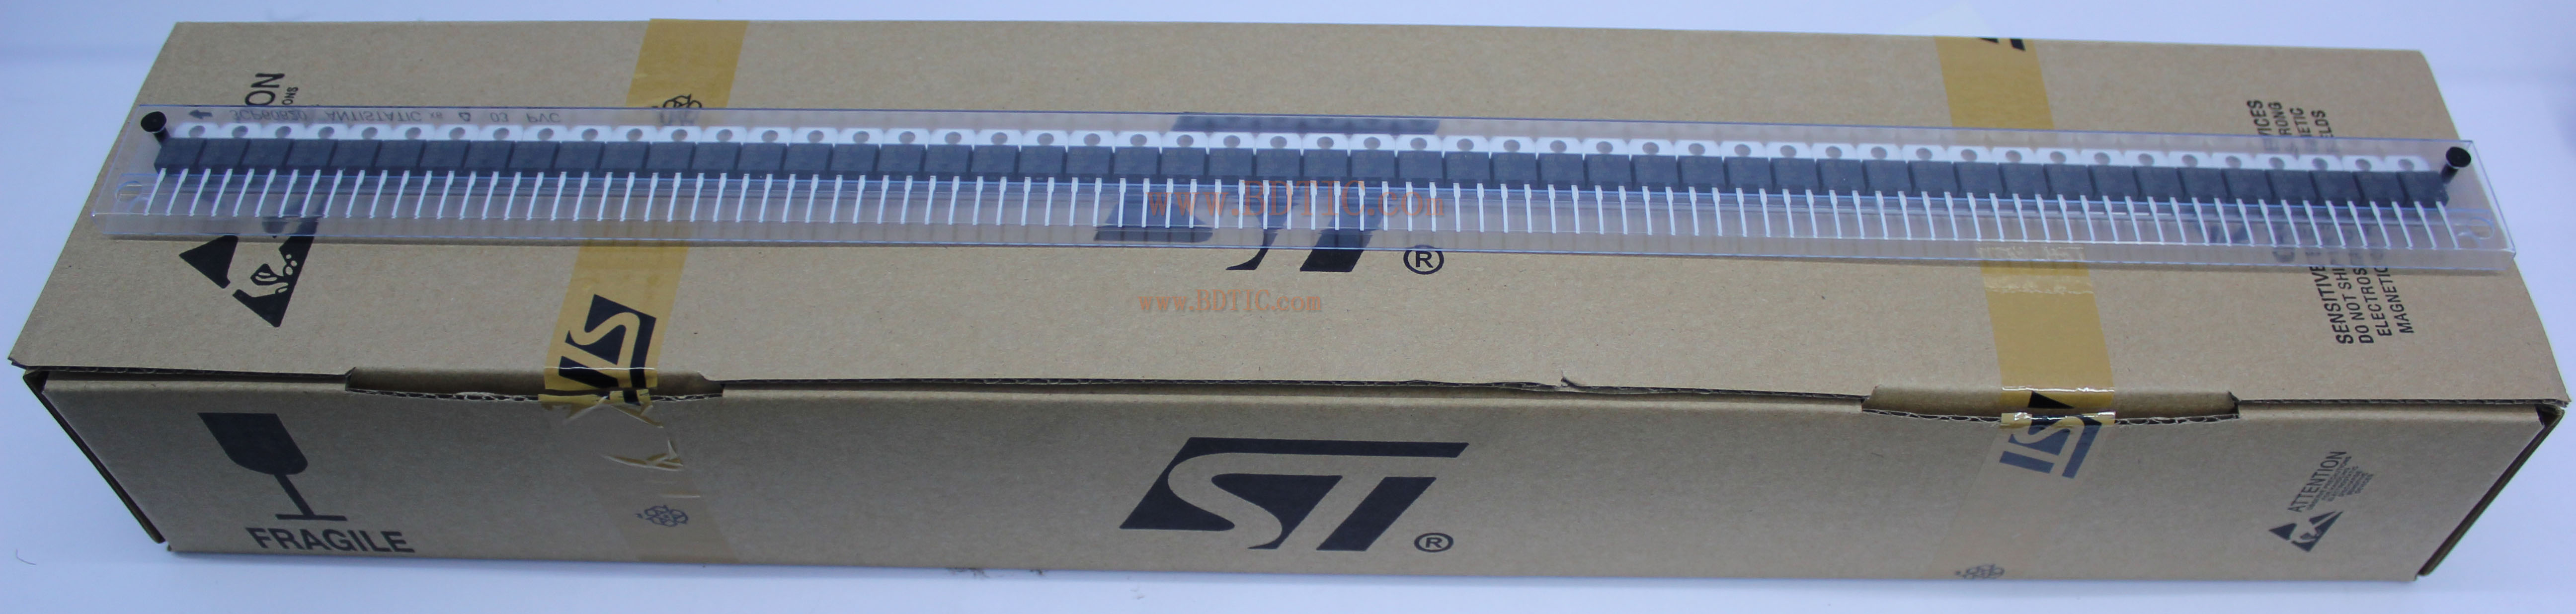 STTH1210DI 芯片管装图